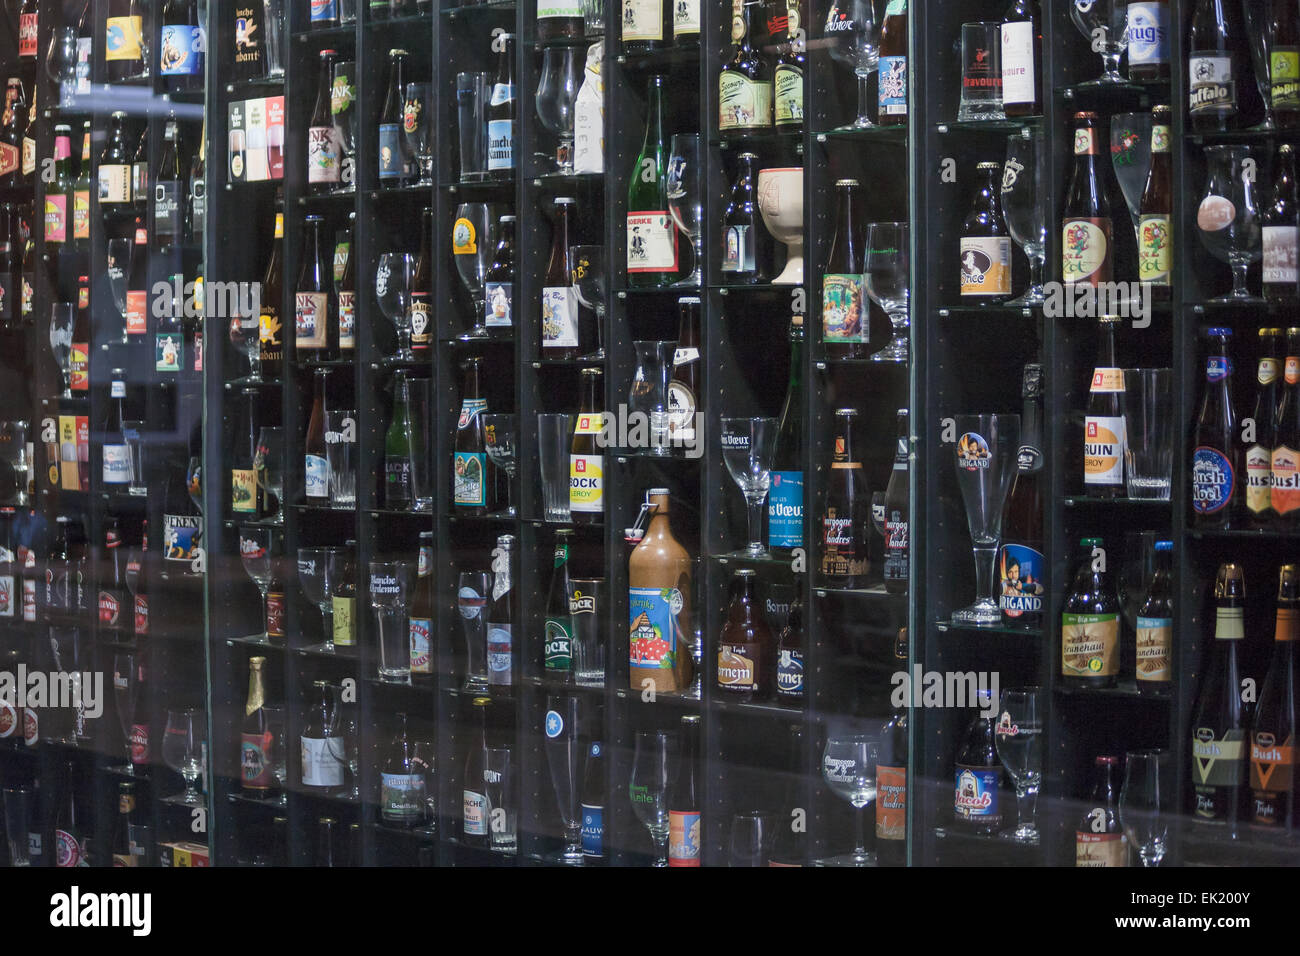 Belgian Beers, Bruges, Belgium Stock Photo